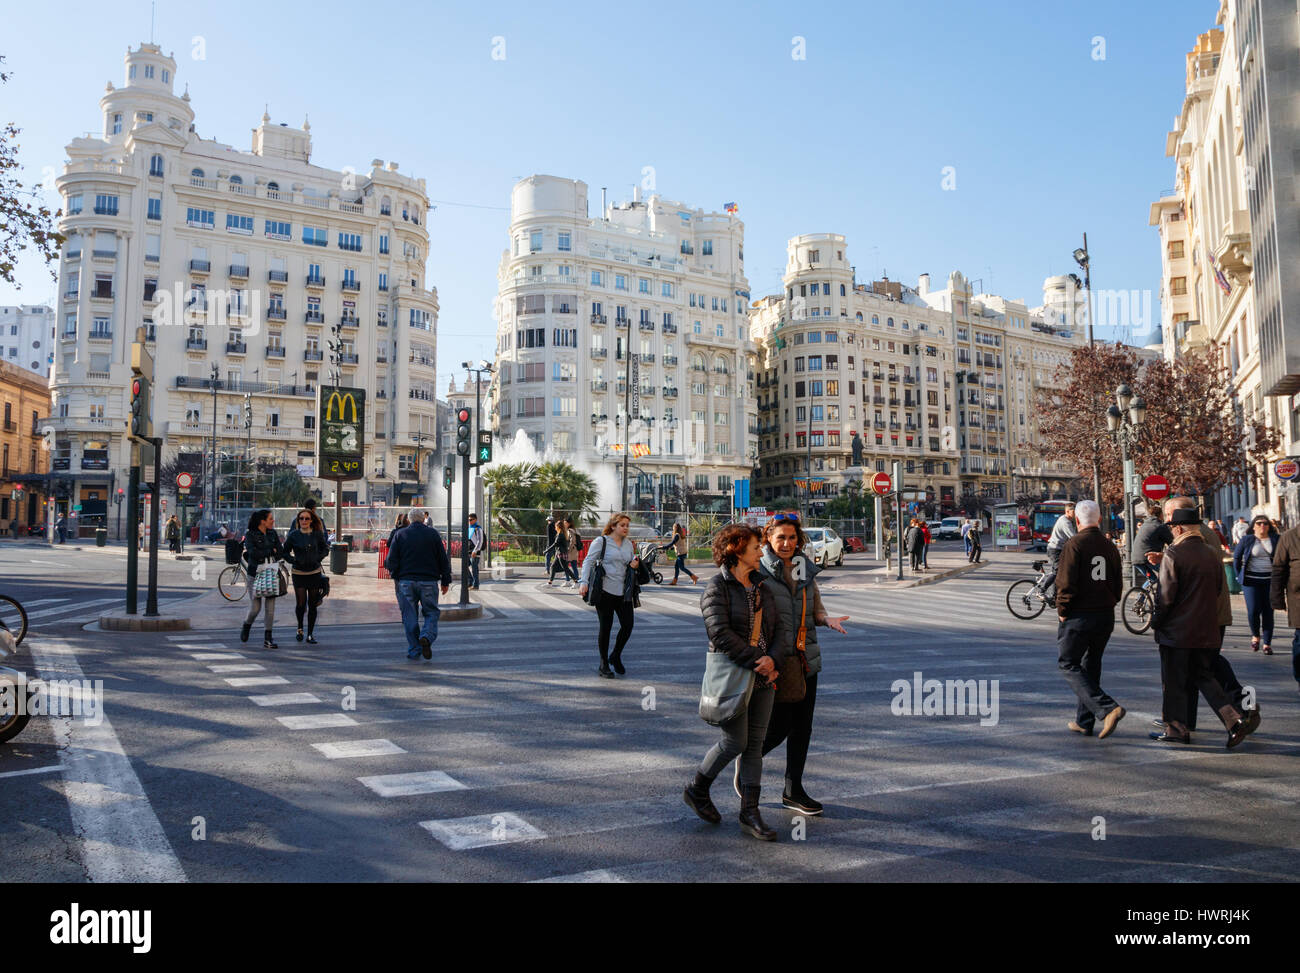 Blick auf die Plaza del Ayuntamiento (Modernisme Plaza der Stadt Halle von Valencia) mit nicht identifizierten Fußgänger die Straße überqueren. Valencia, Spanien. Stockfoto